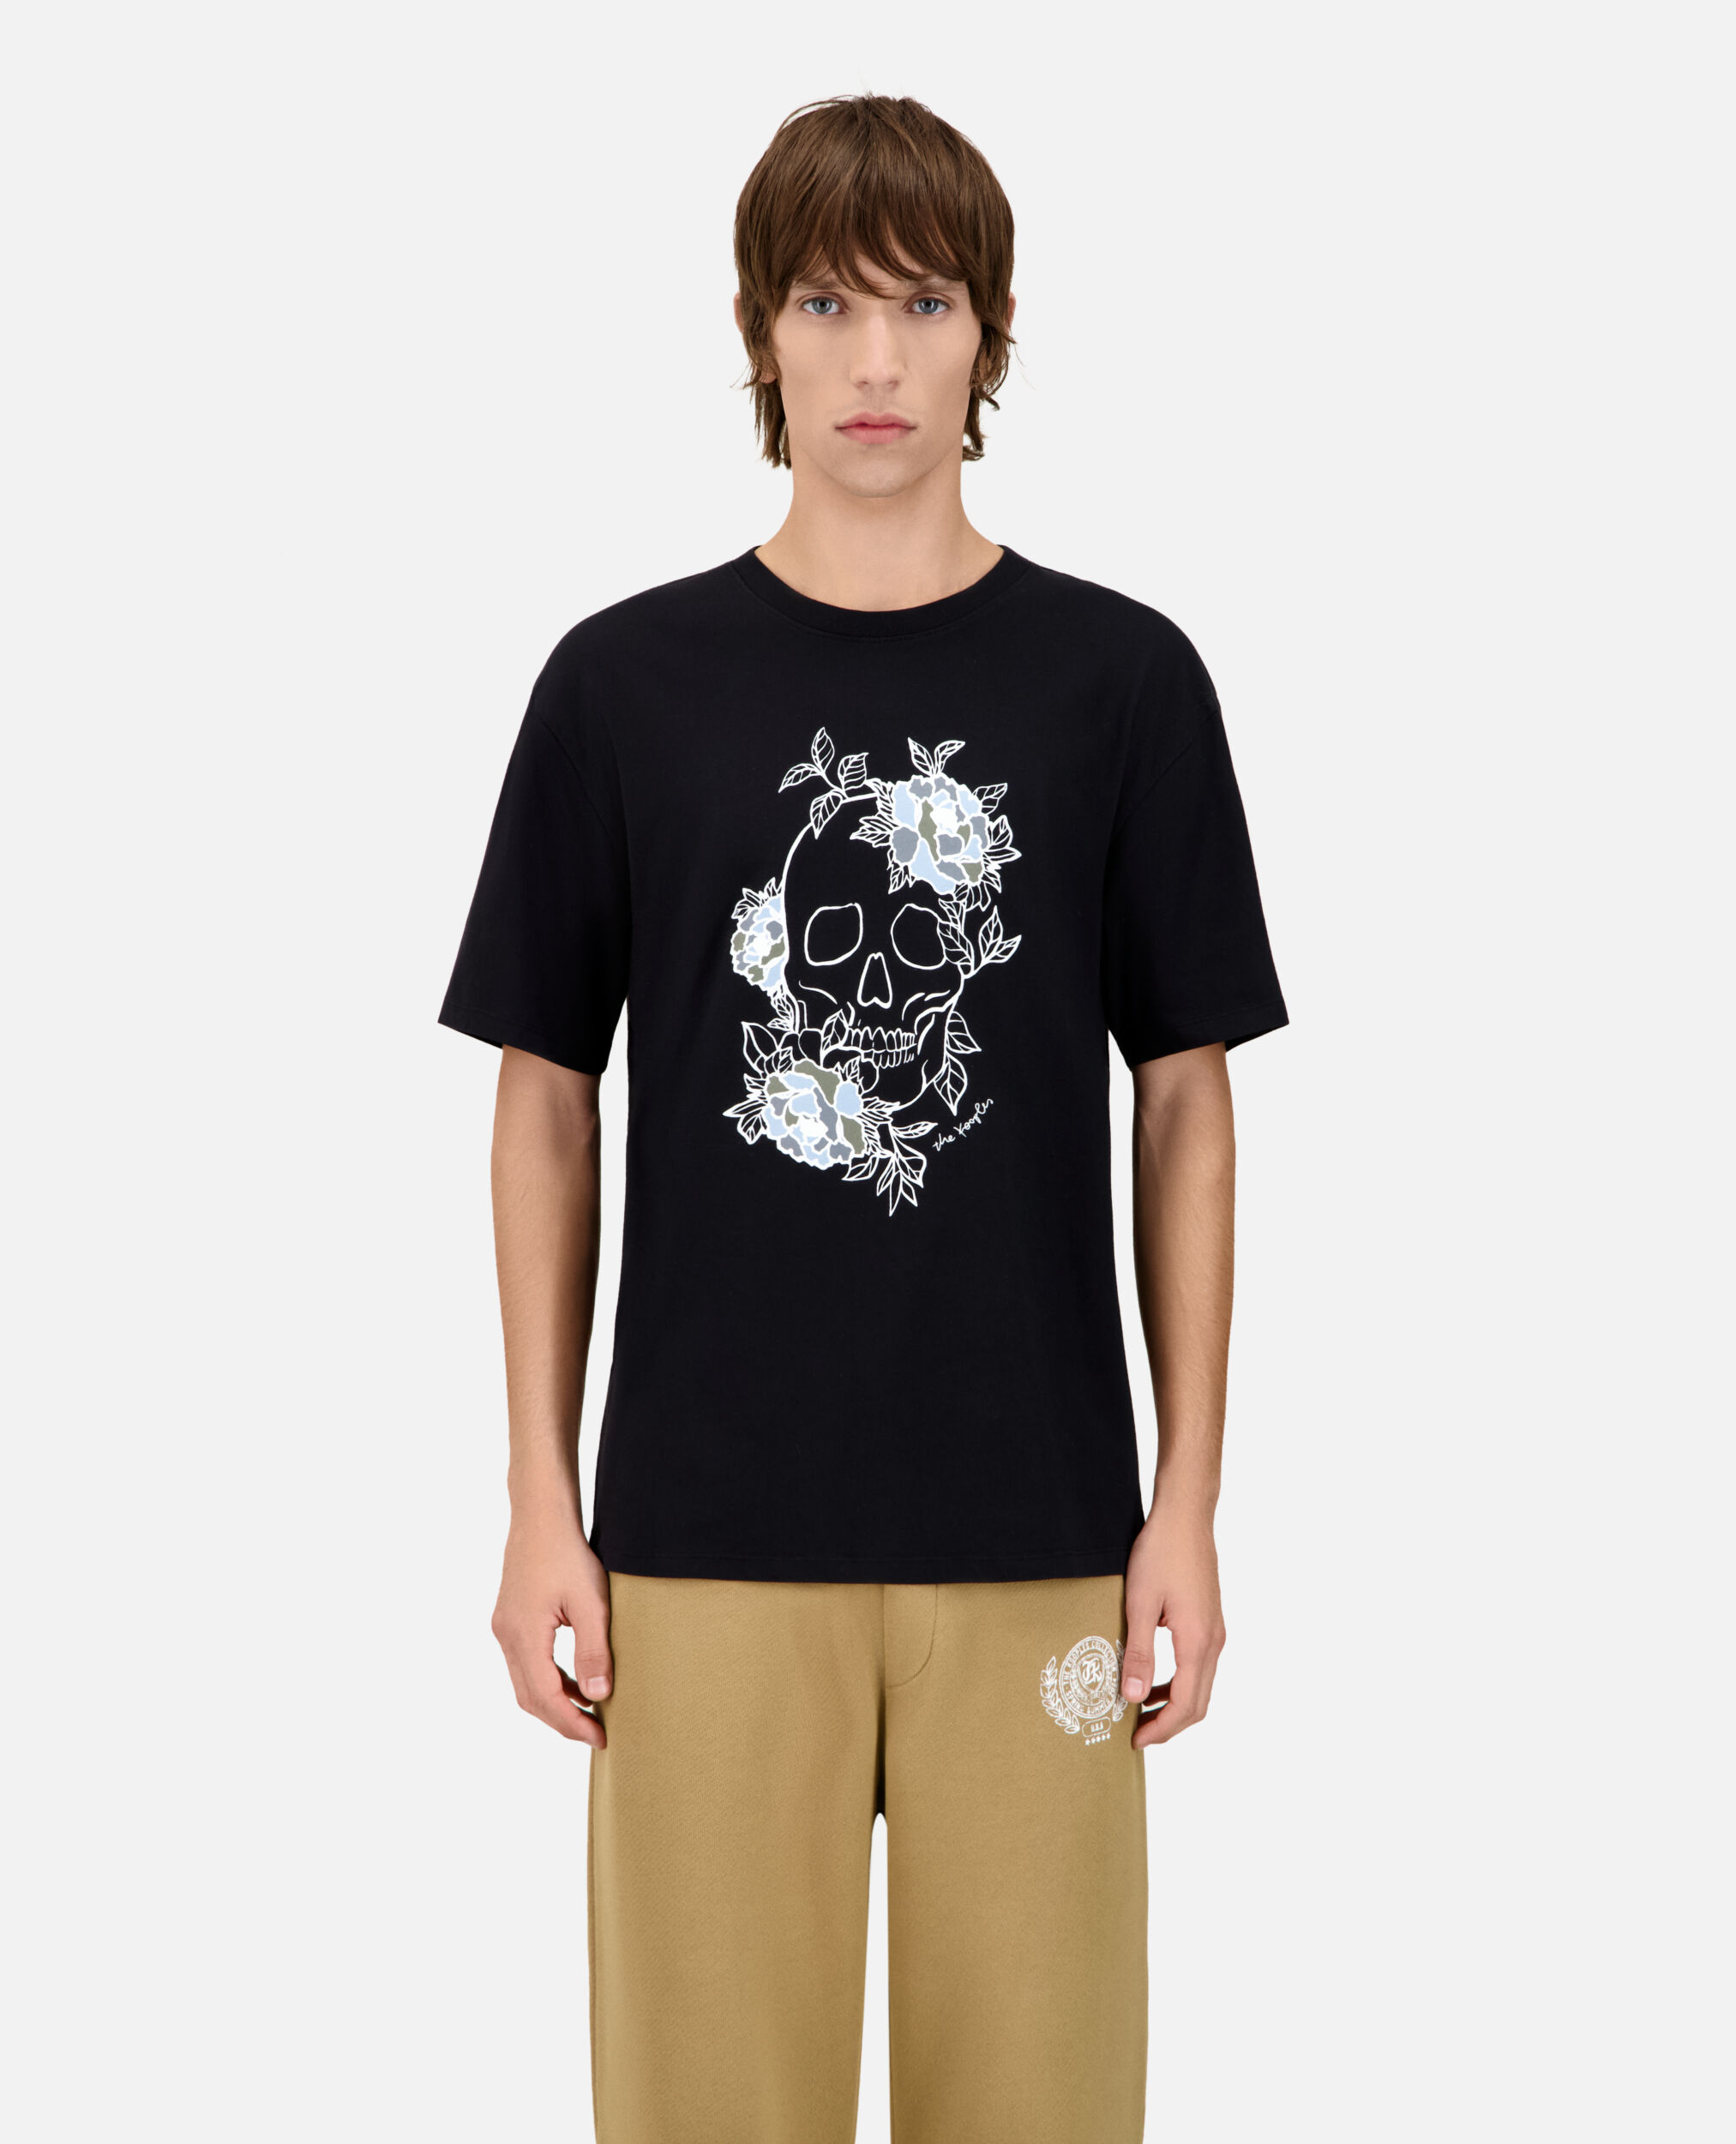 Camiseta hombre negra serigrafía Flower skull, BLACK WASHED, hi-res image number null